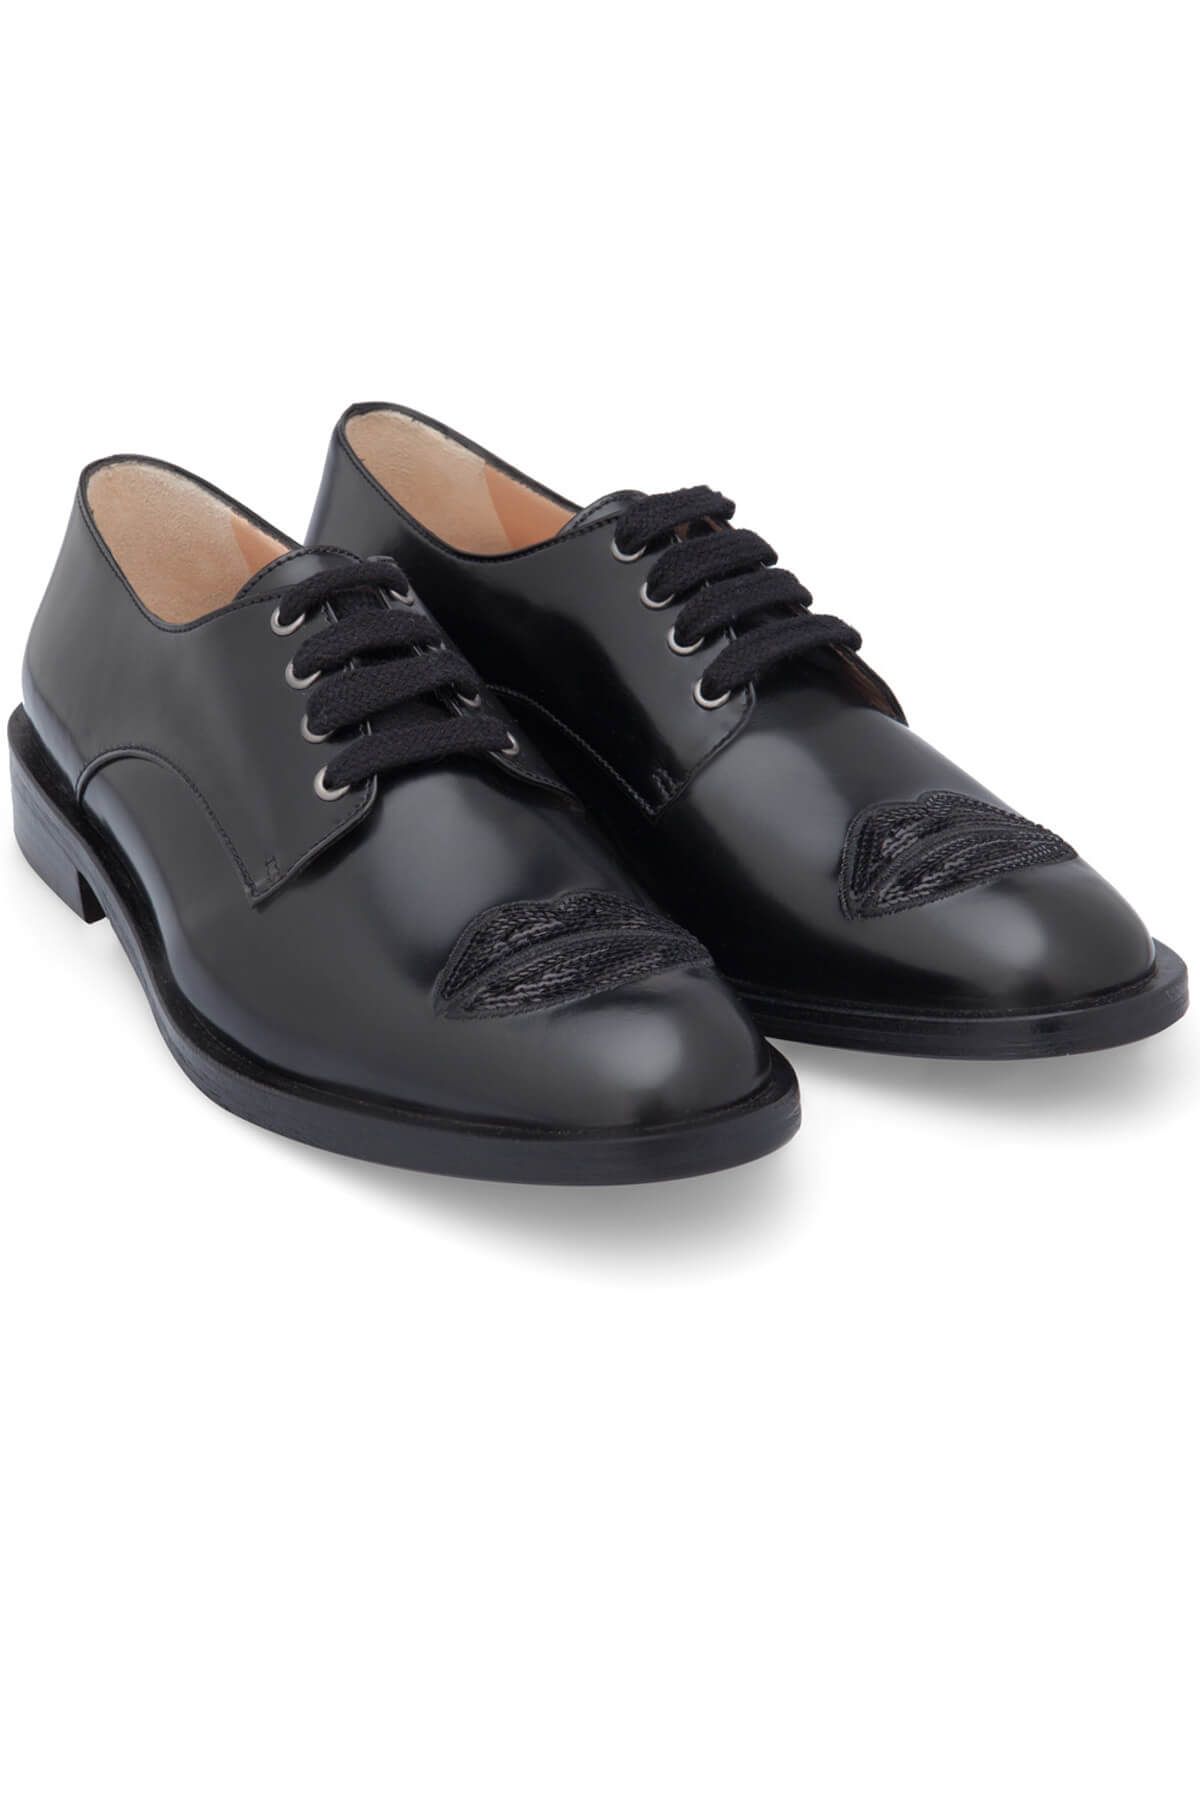 Markus Lupfer Kadın Siyah Klasik Ayakkabı